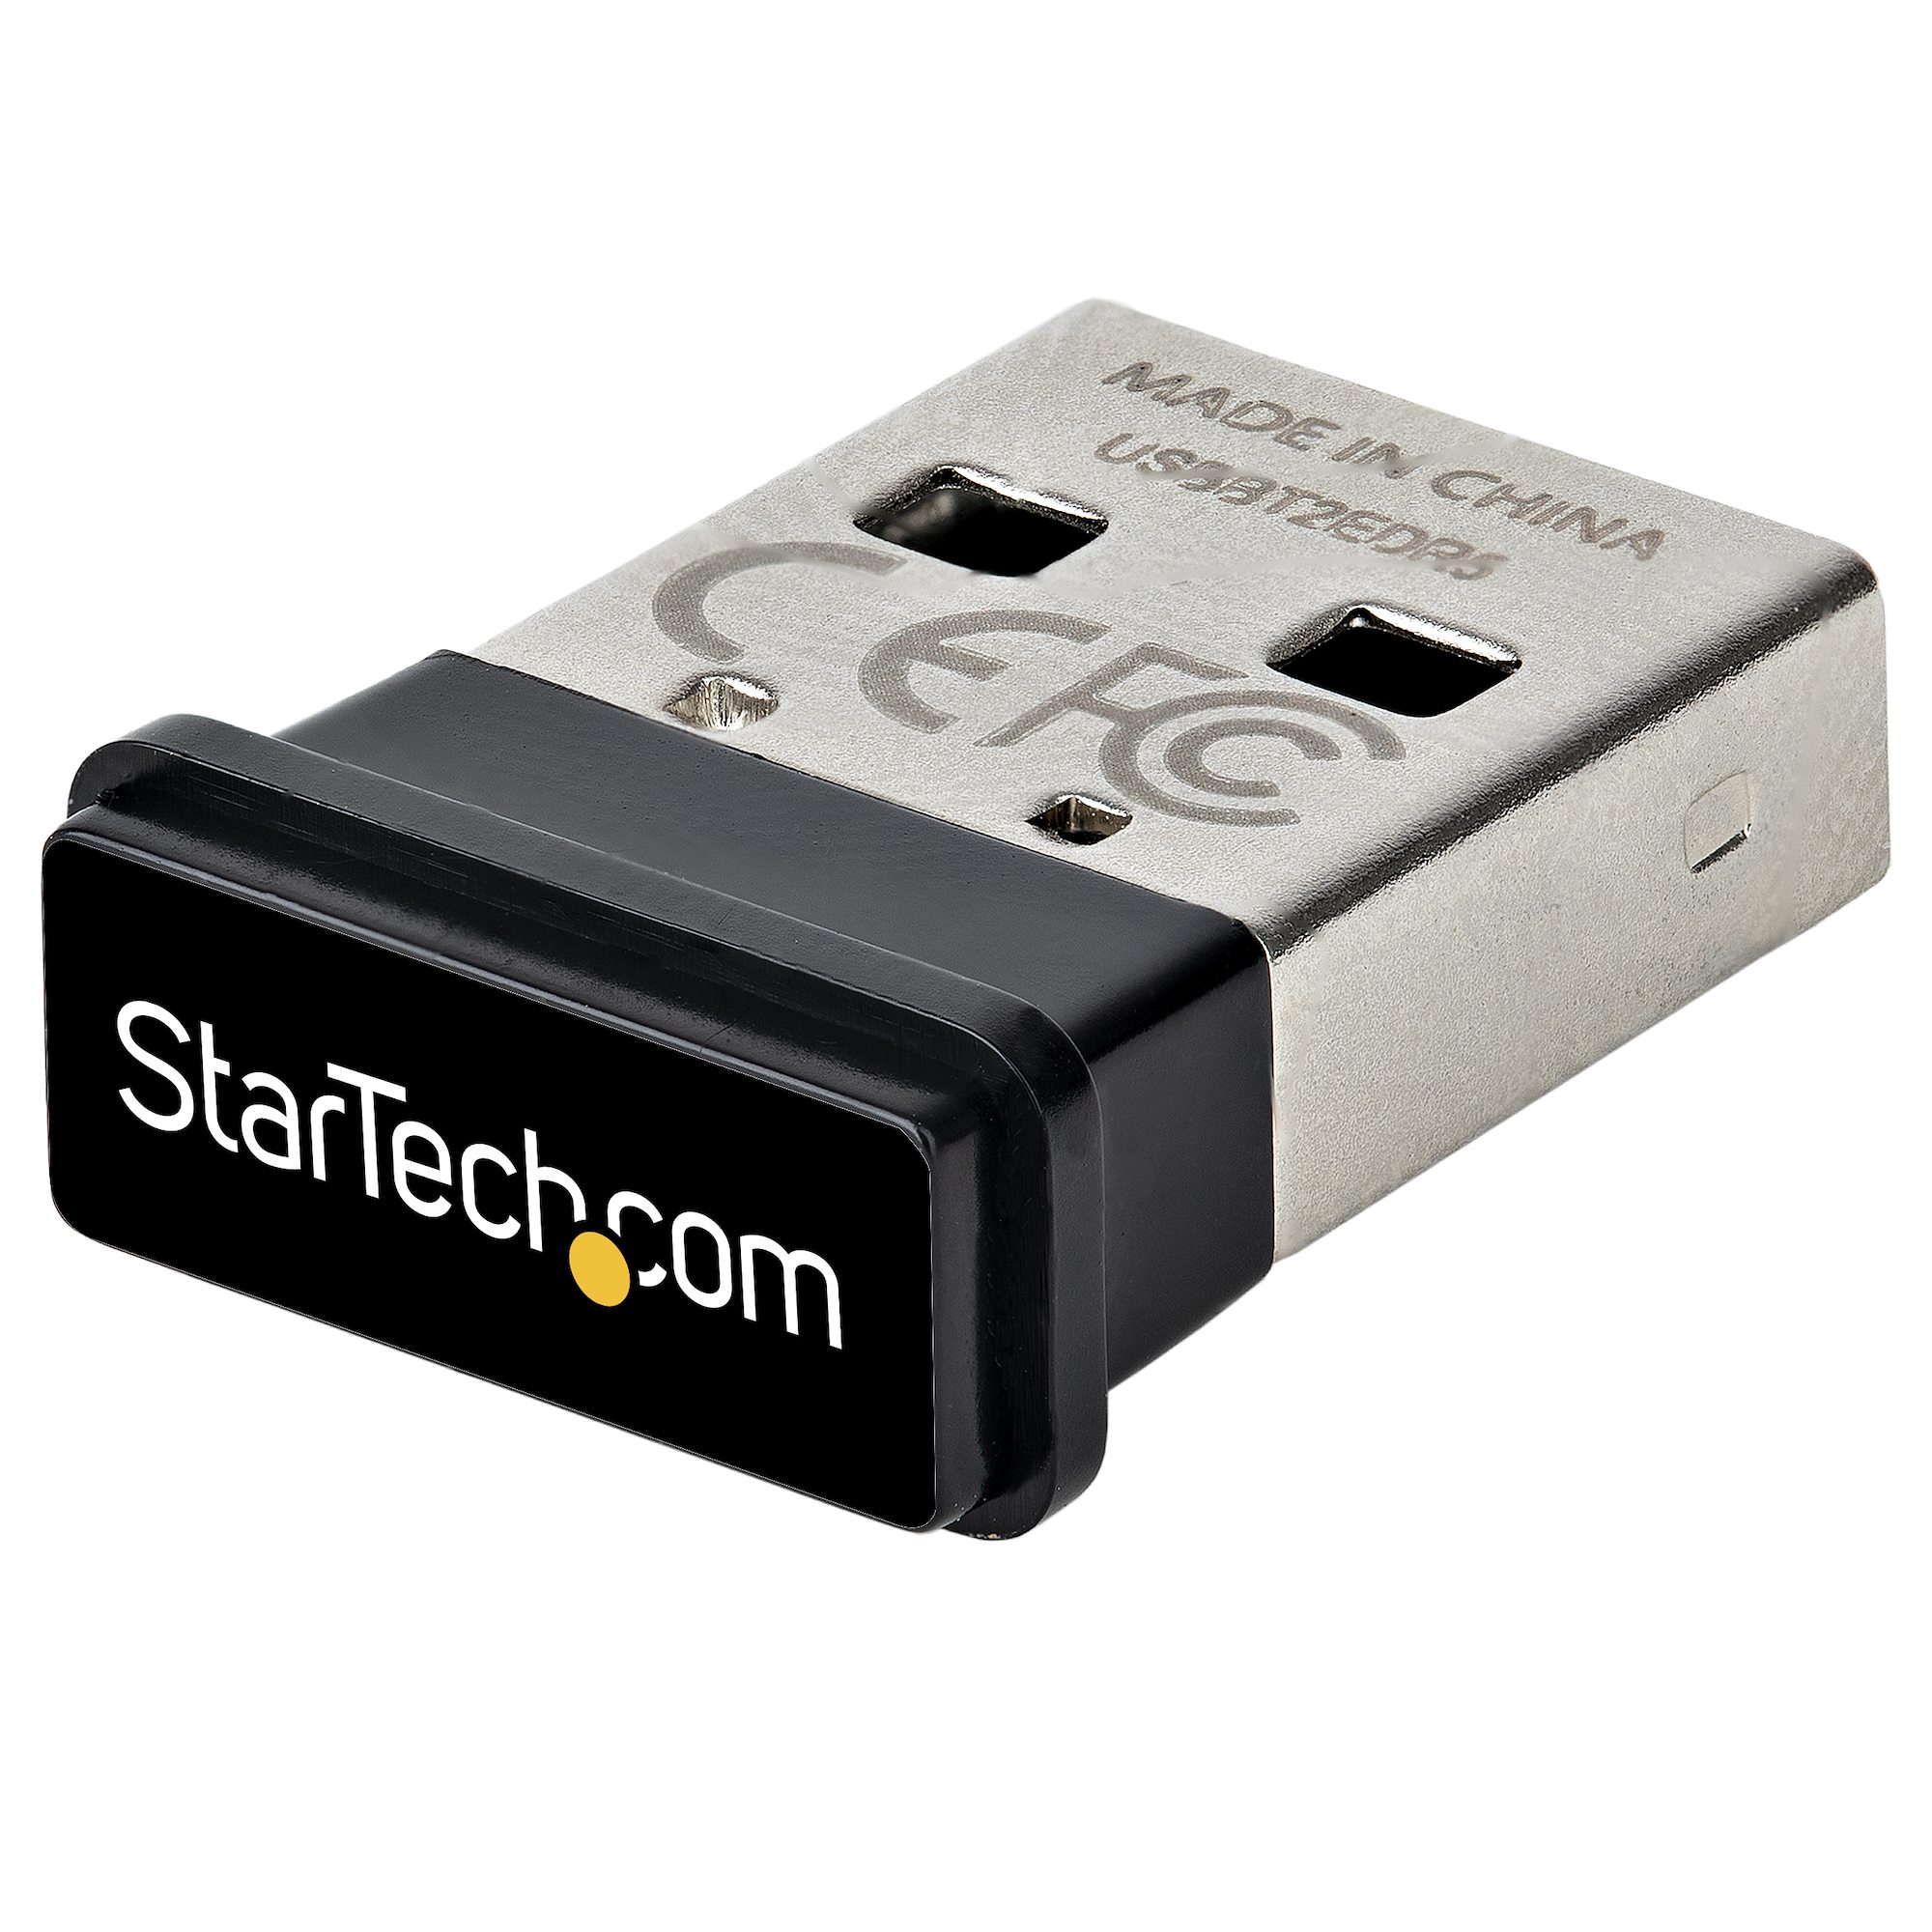 Bluetooth 5.0 Adapter/Dongle for PC & Telecom | StarTech.com